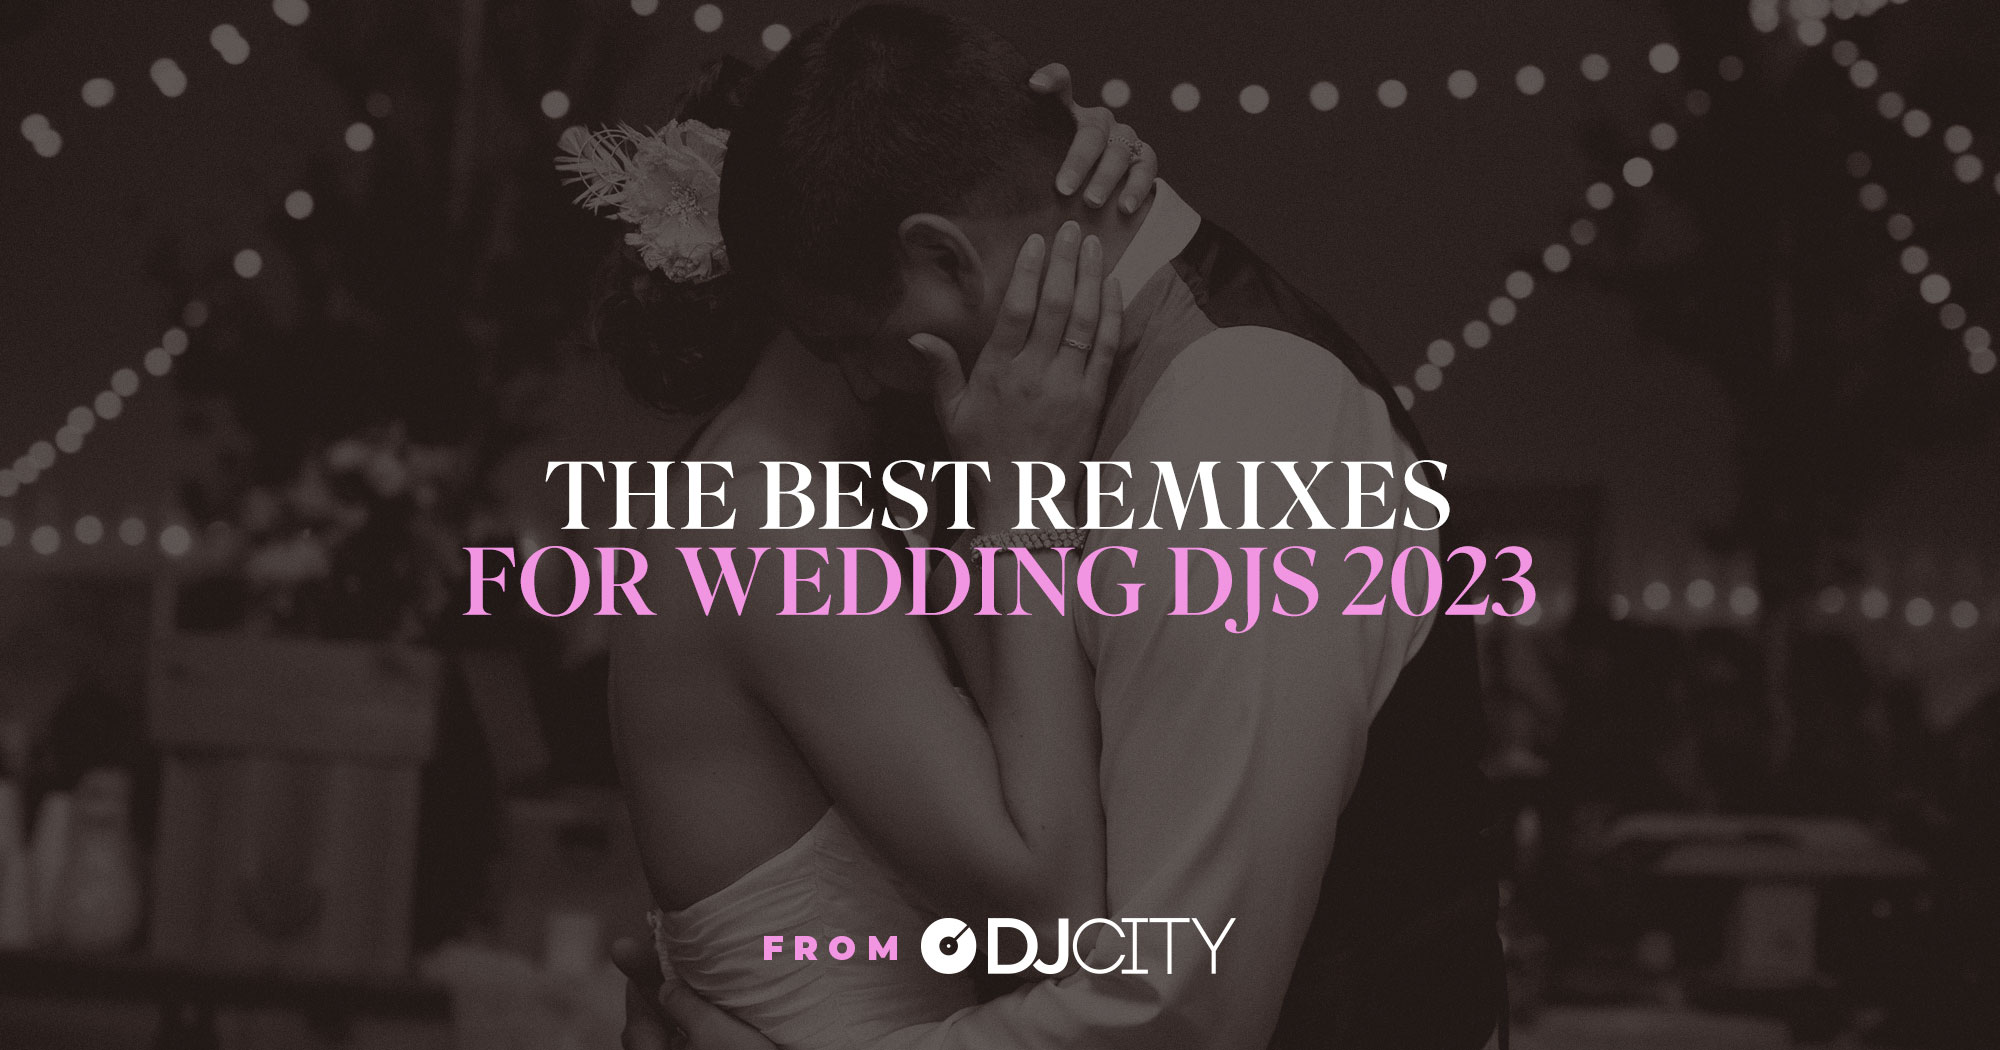 The Best Remixes for Wedding DJs 2023